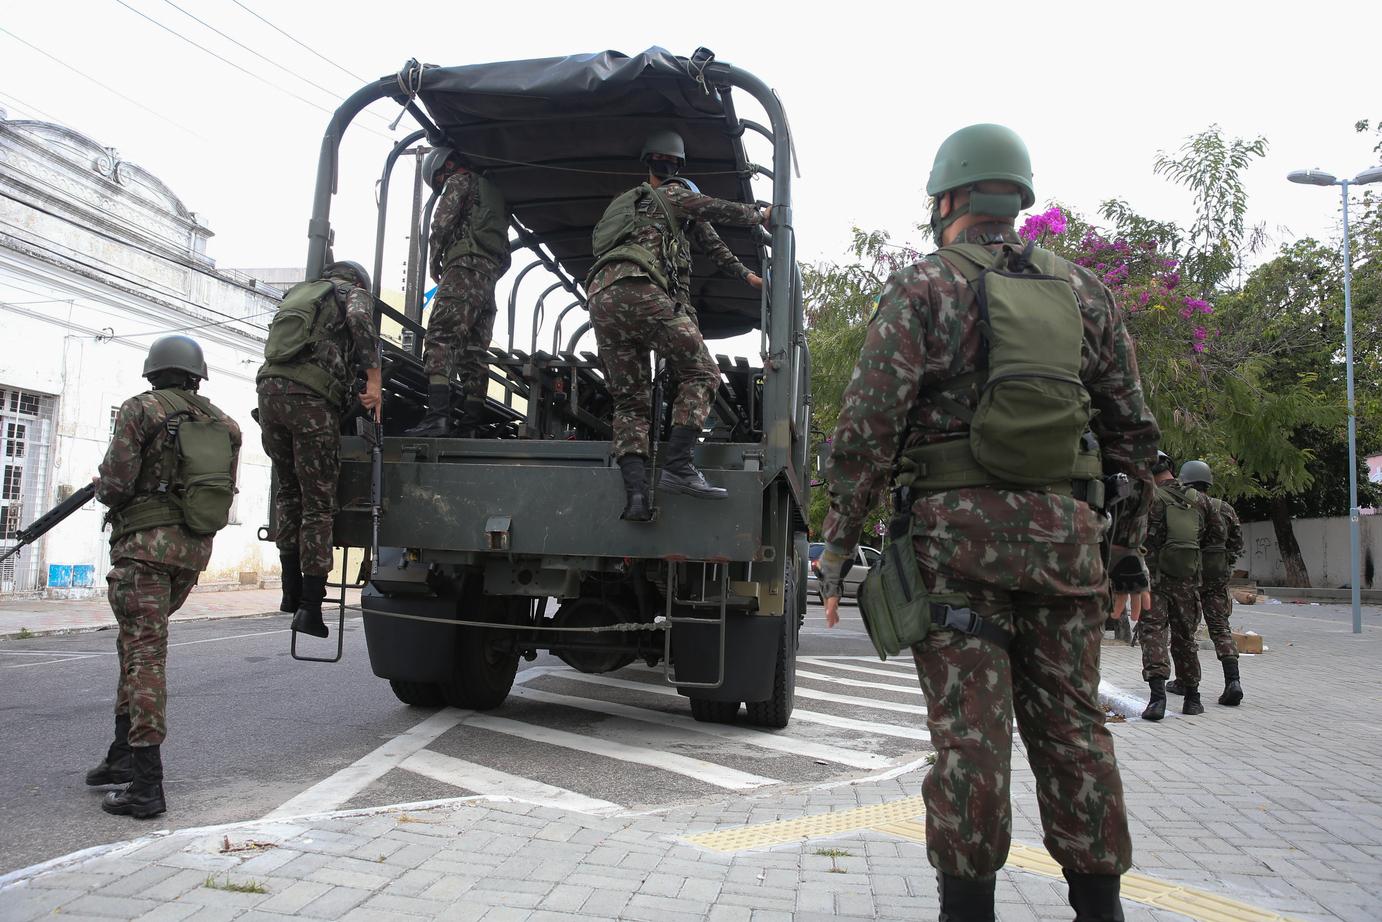 Cidadania: Exército Brasileiro convoca reservistas a se